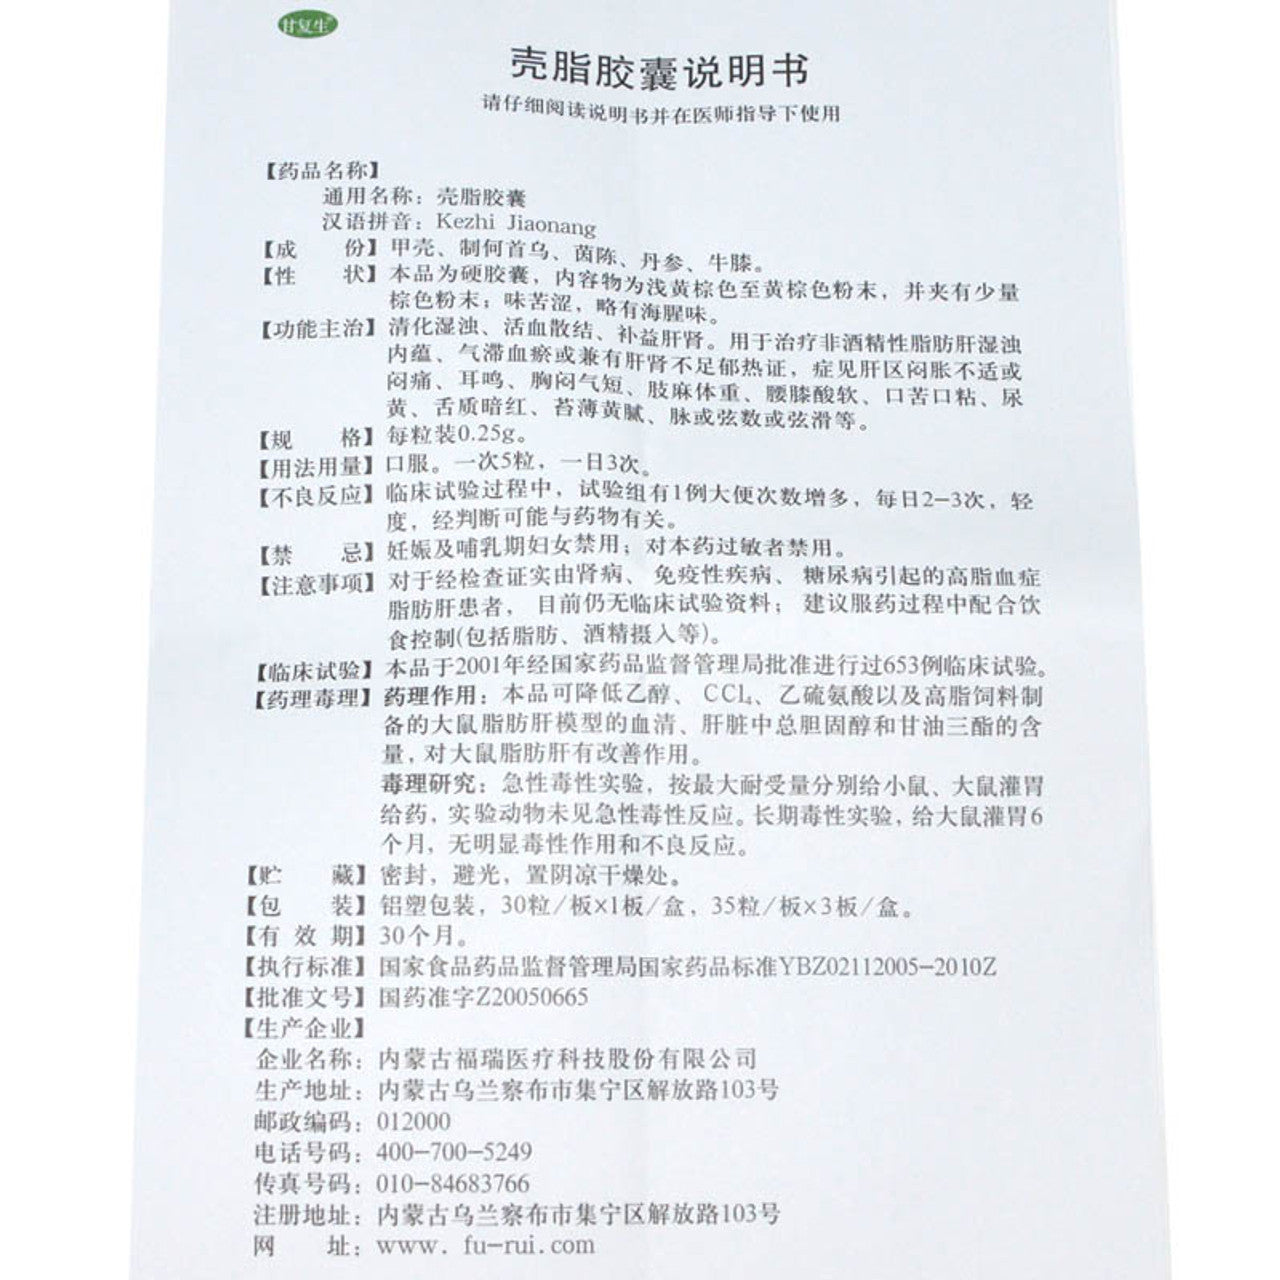 China Herb. GANFUSHENG KEZHI JIAONANG For Fatty Liver. Kezhi Jiaonang. Ke Zhi Jiao Nang. Ke Zhi Capsules. Ke Zhi Jiao Nang.